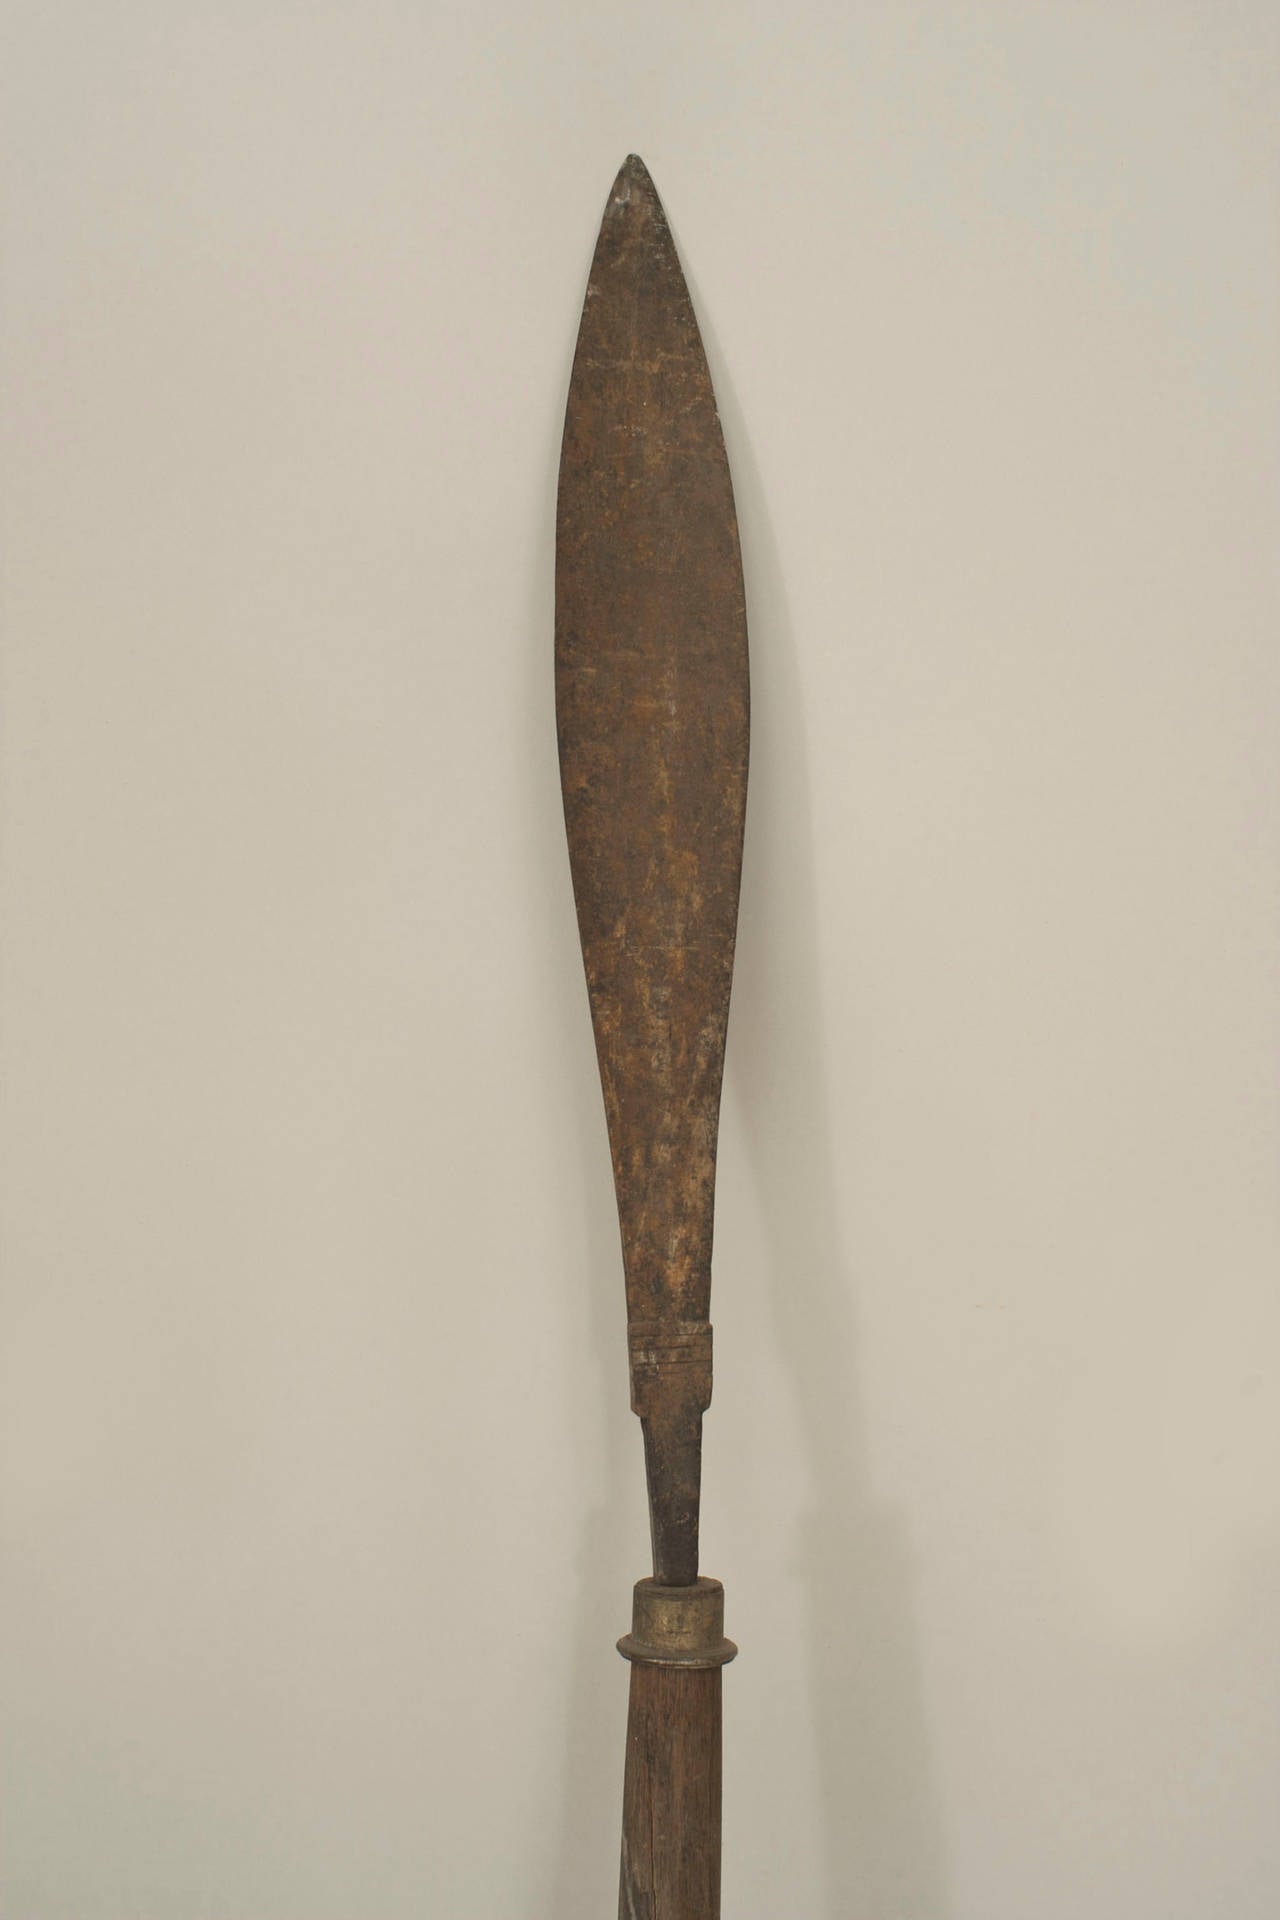 Lance de style Renaissance anglaise avec manche en bois et lame simple en fer en forme de feuille de 15 pouces.
